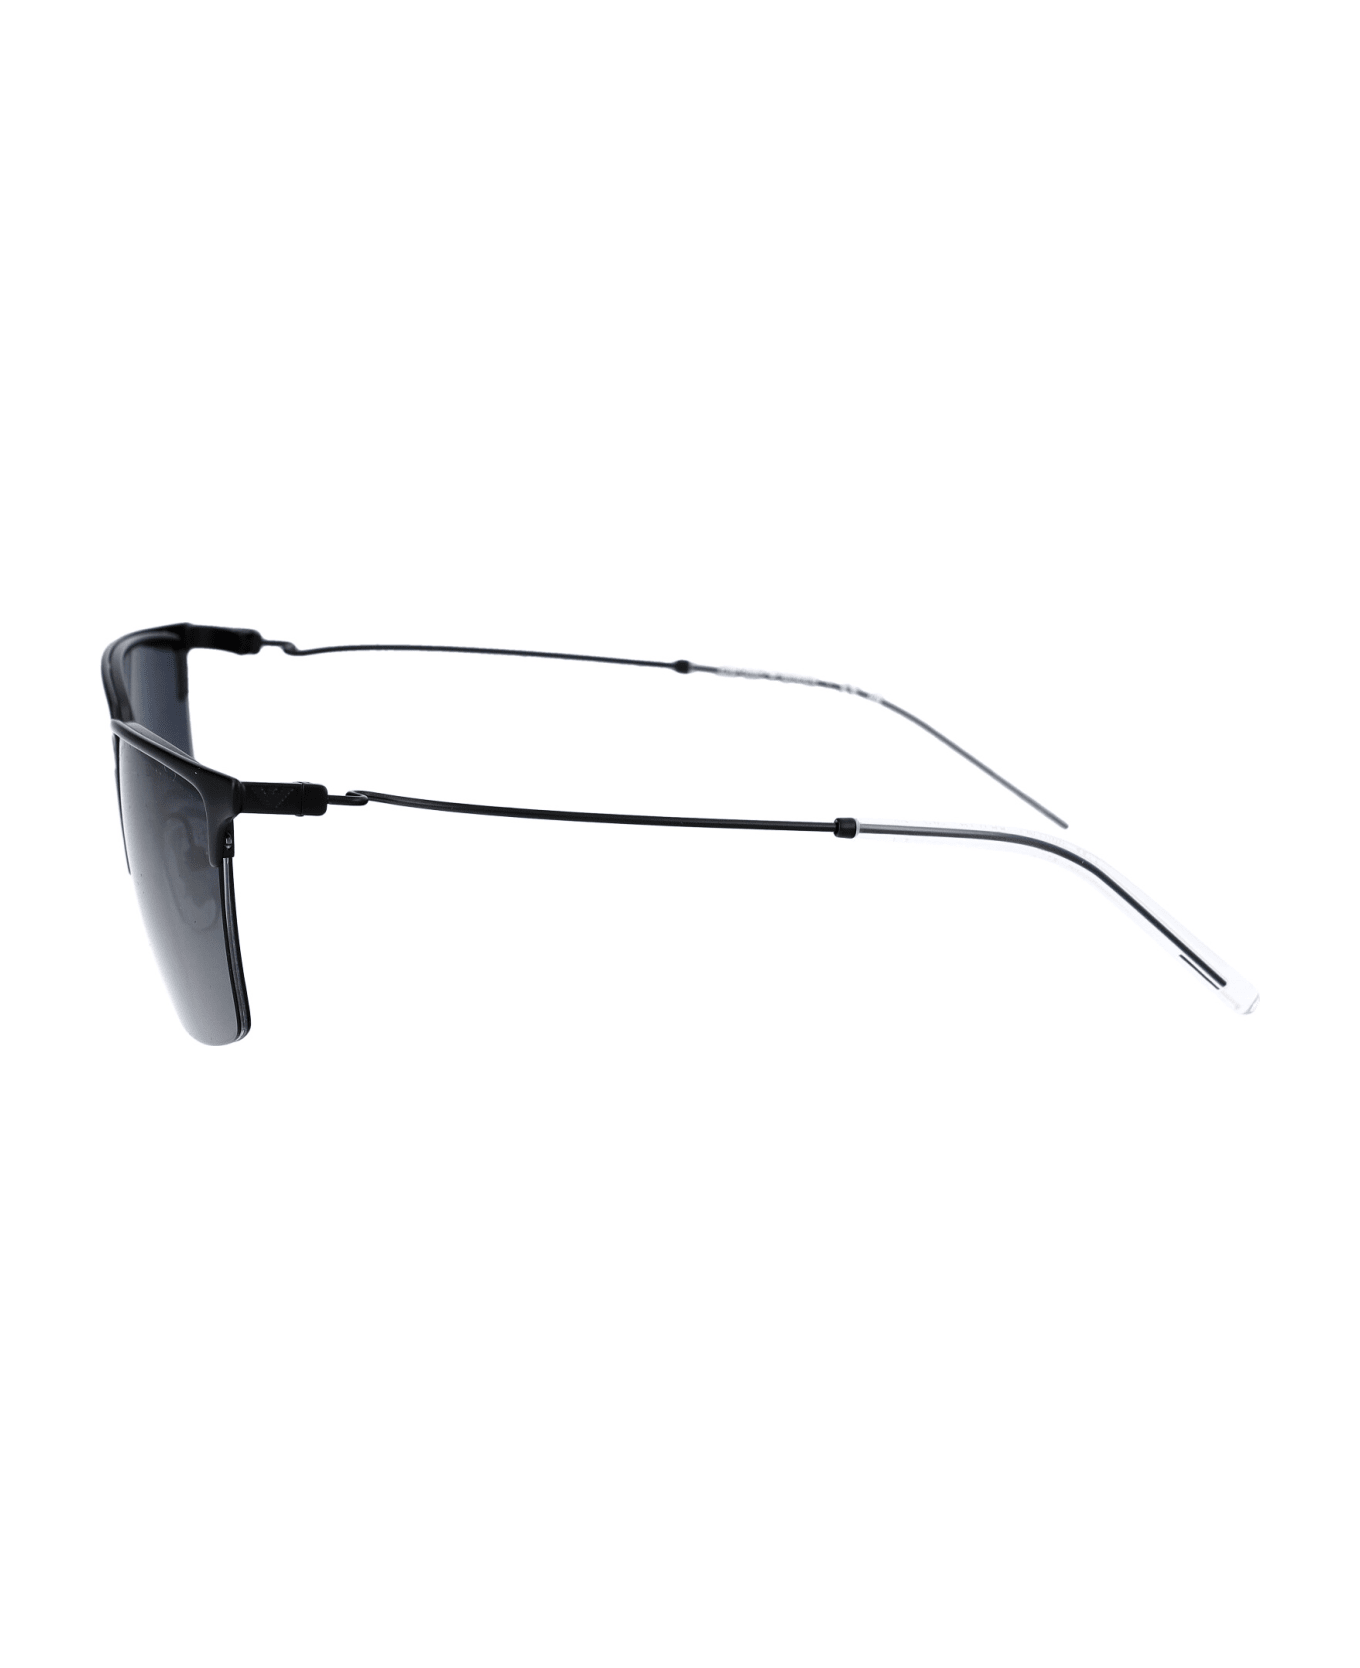 Emporio Armani 0ea2155 Sunglasses - 300187 MATTE BLACK